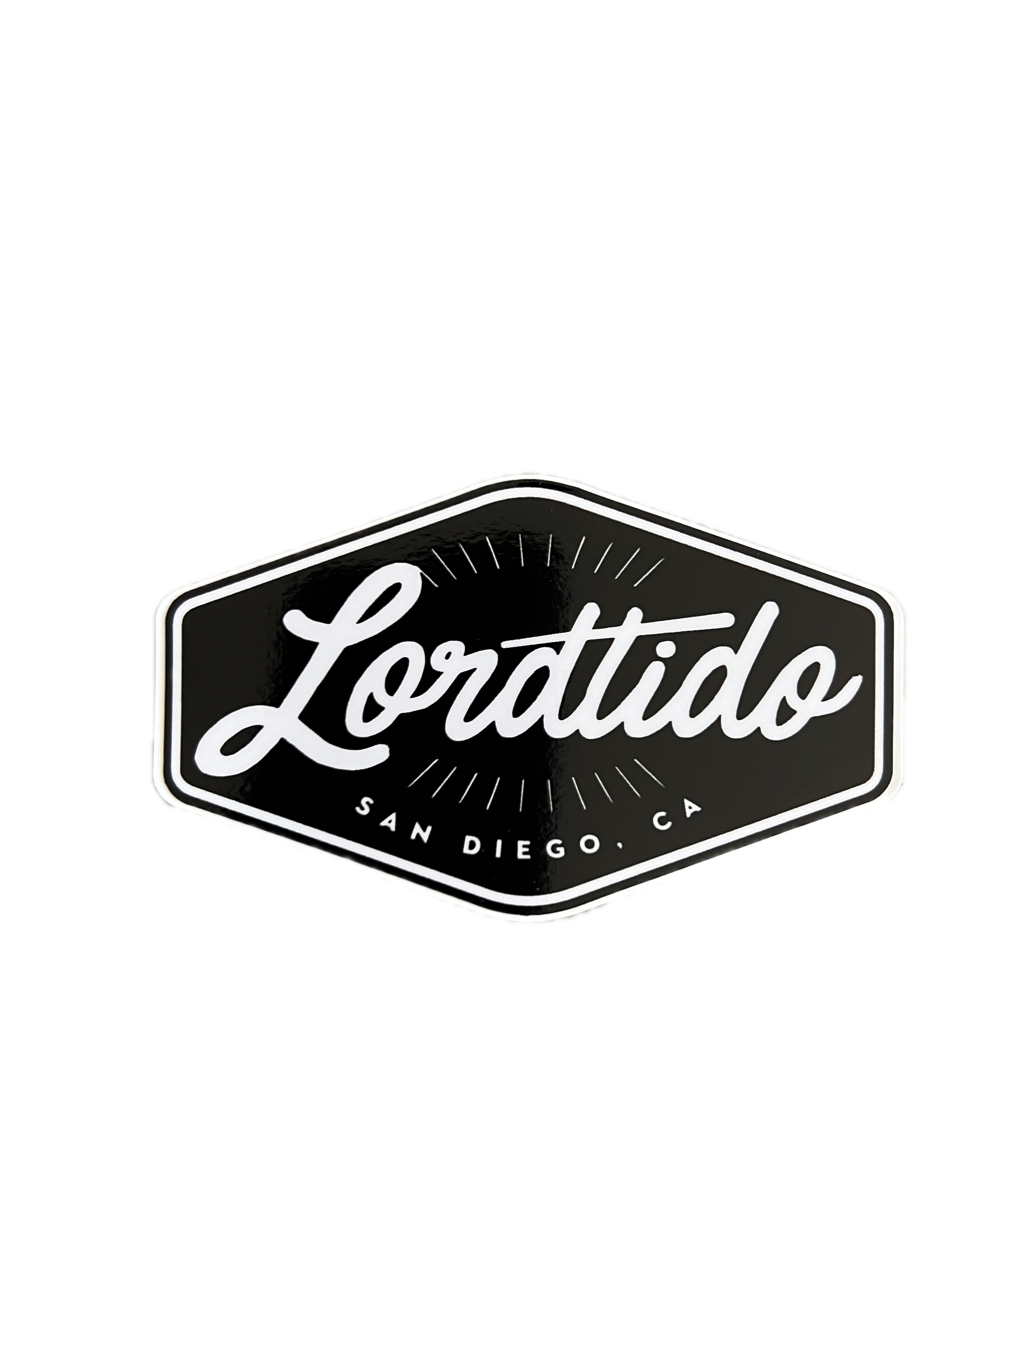 Lordtido Signature Sticker